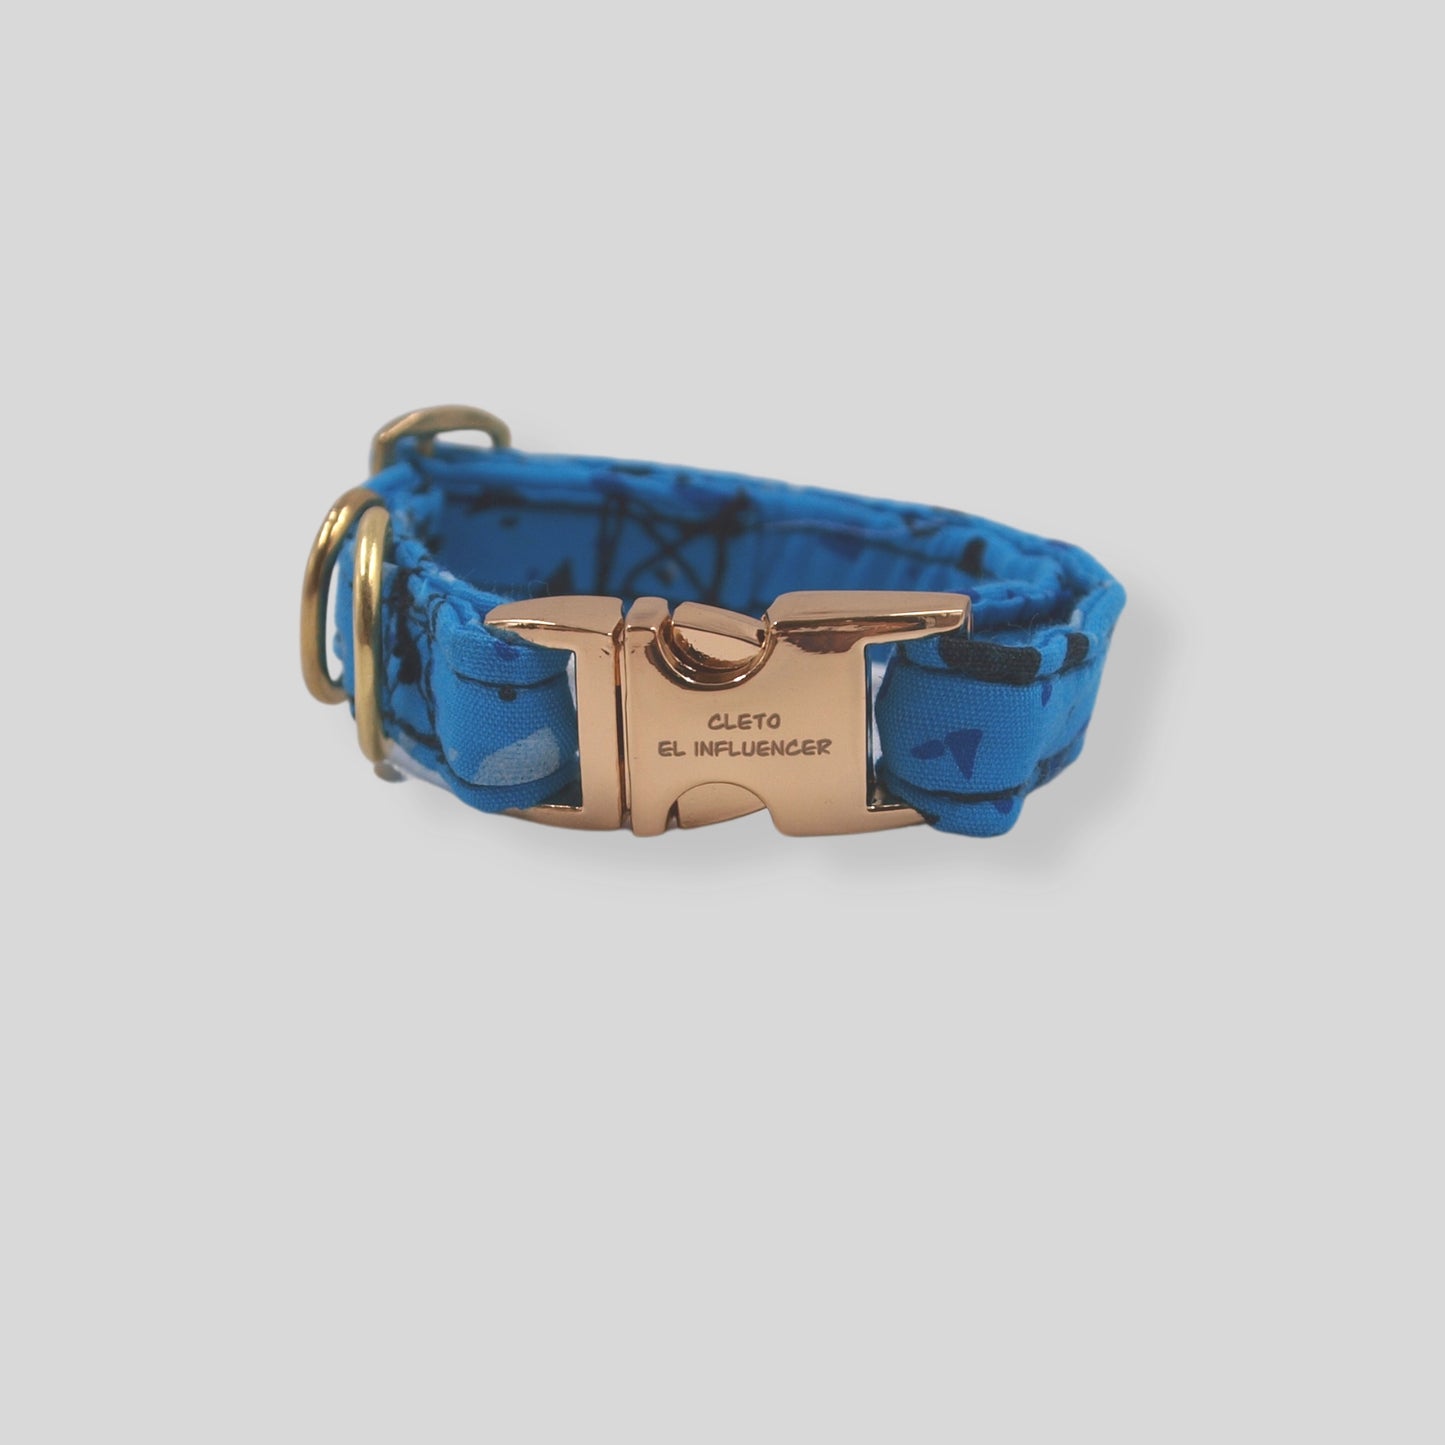 Collar SMALL para mascota con herrajes dorados, el collar es azul con formas geométricas en tonos azules.